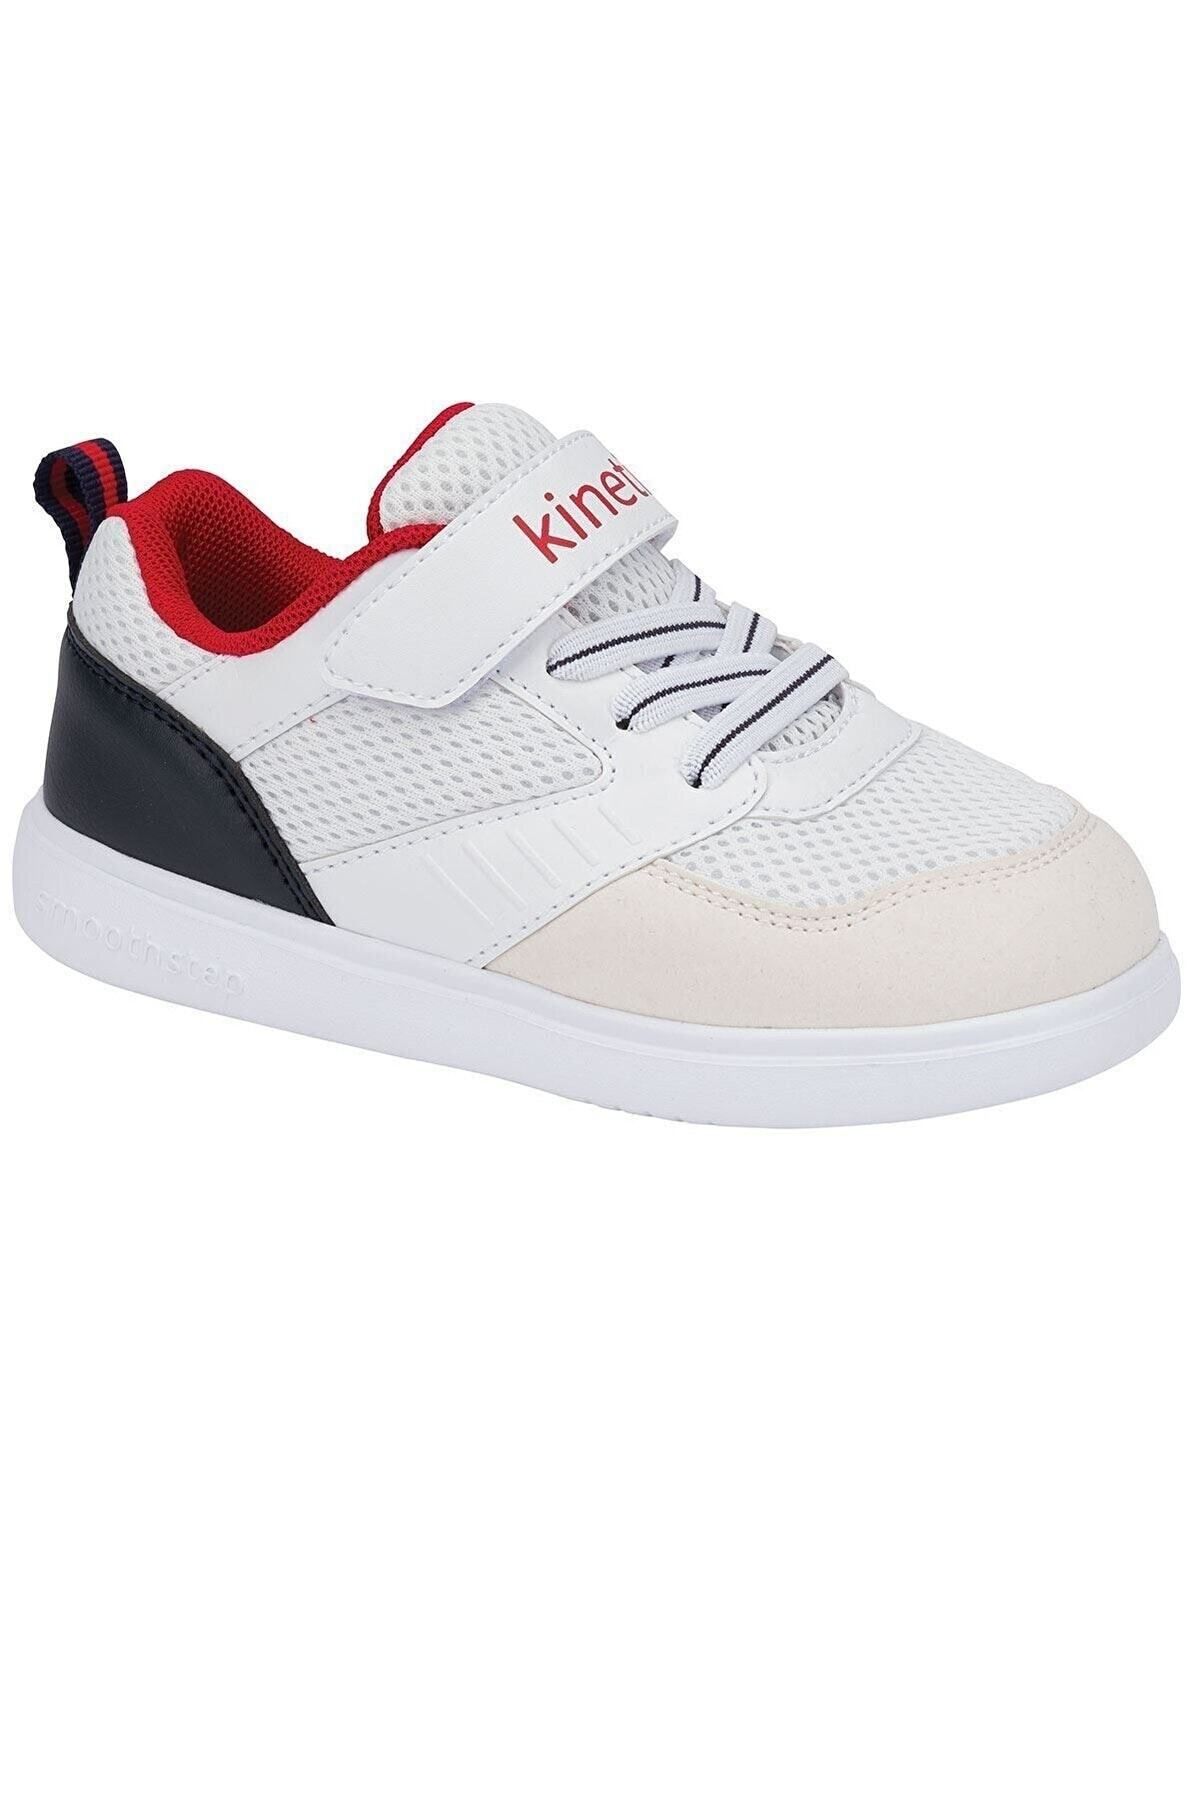 Kinetix TURTLE MESH 1FX Beyaz Erkek Çocuk Sneaker Ayakkabı 100586610